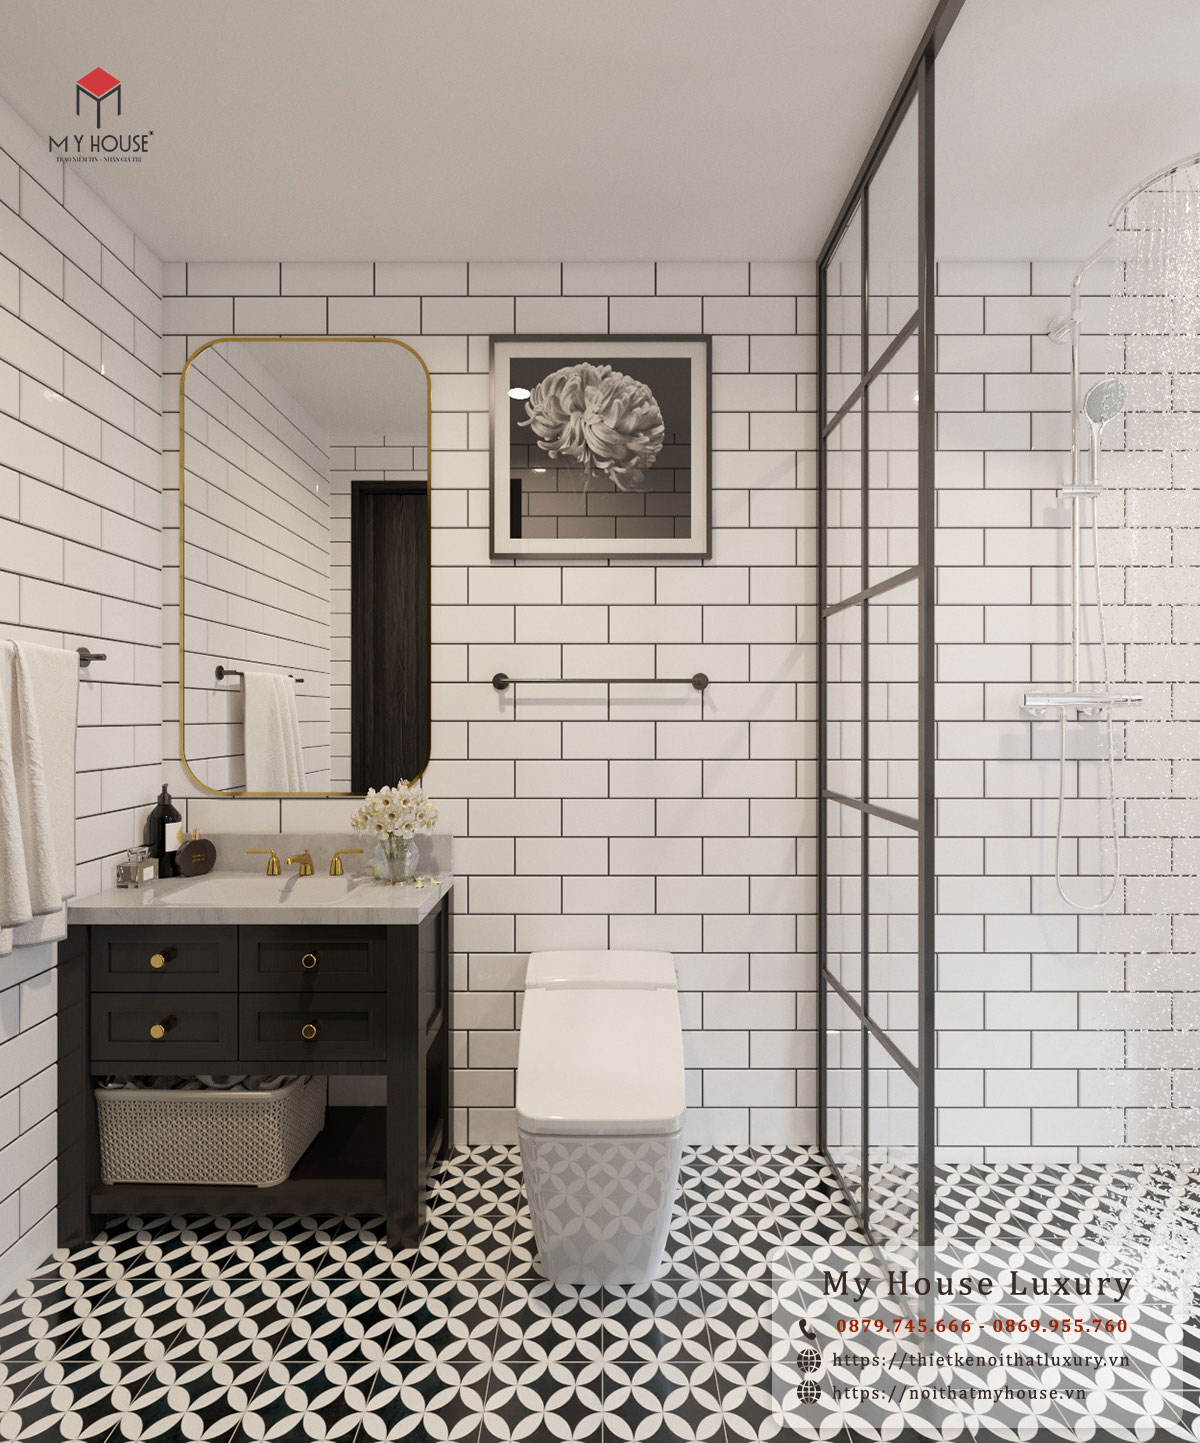 Phòng tắm Indochine tinh tế với sự phối màu tương phản trắng - đen